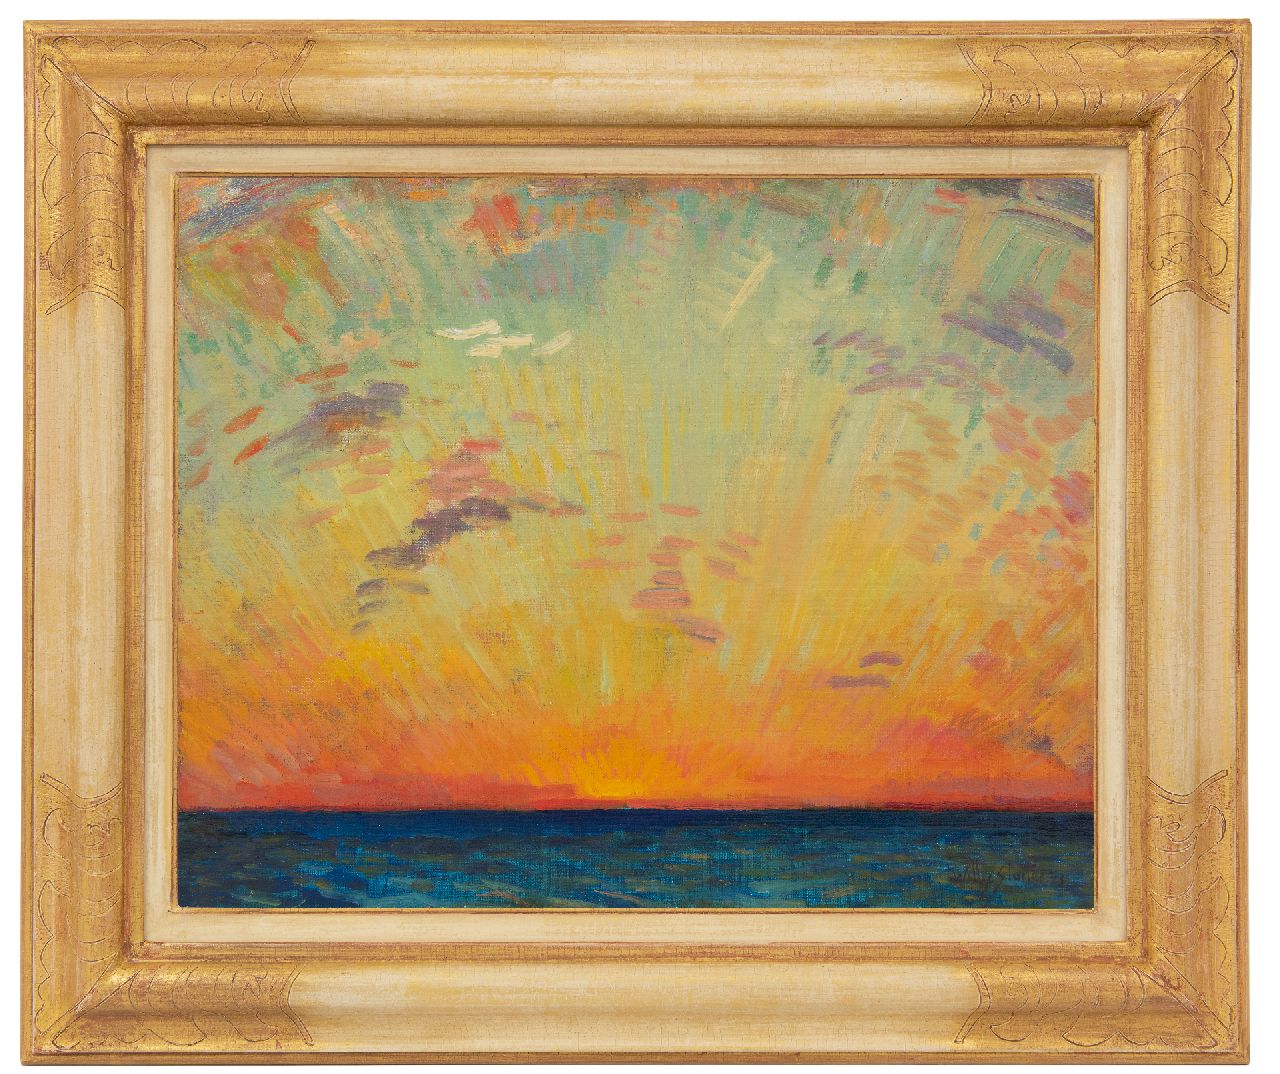 Sluiter J.W.  | Jan Willem 'Willy' Sluiter, De Indische Oceaan met ondergaande zon, olieverf op doek 40,2 x 50,2 cm, gesigneerd rechtsonder en gedateerd '23